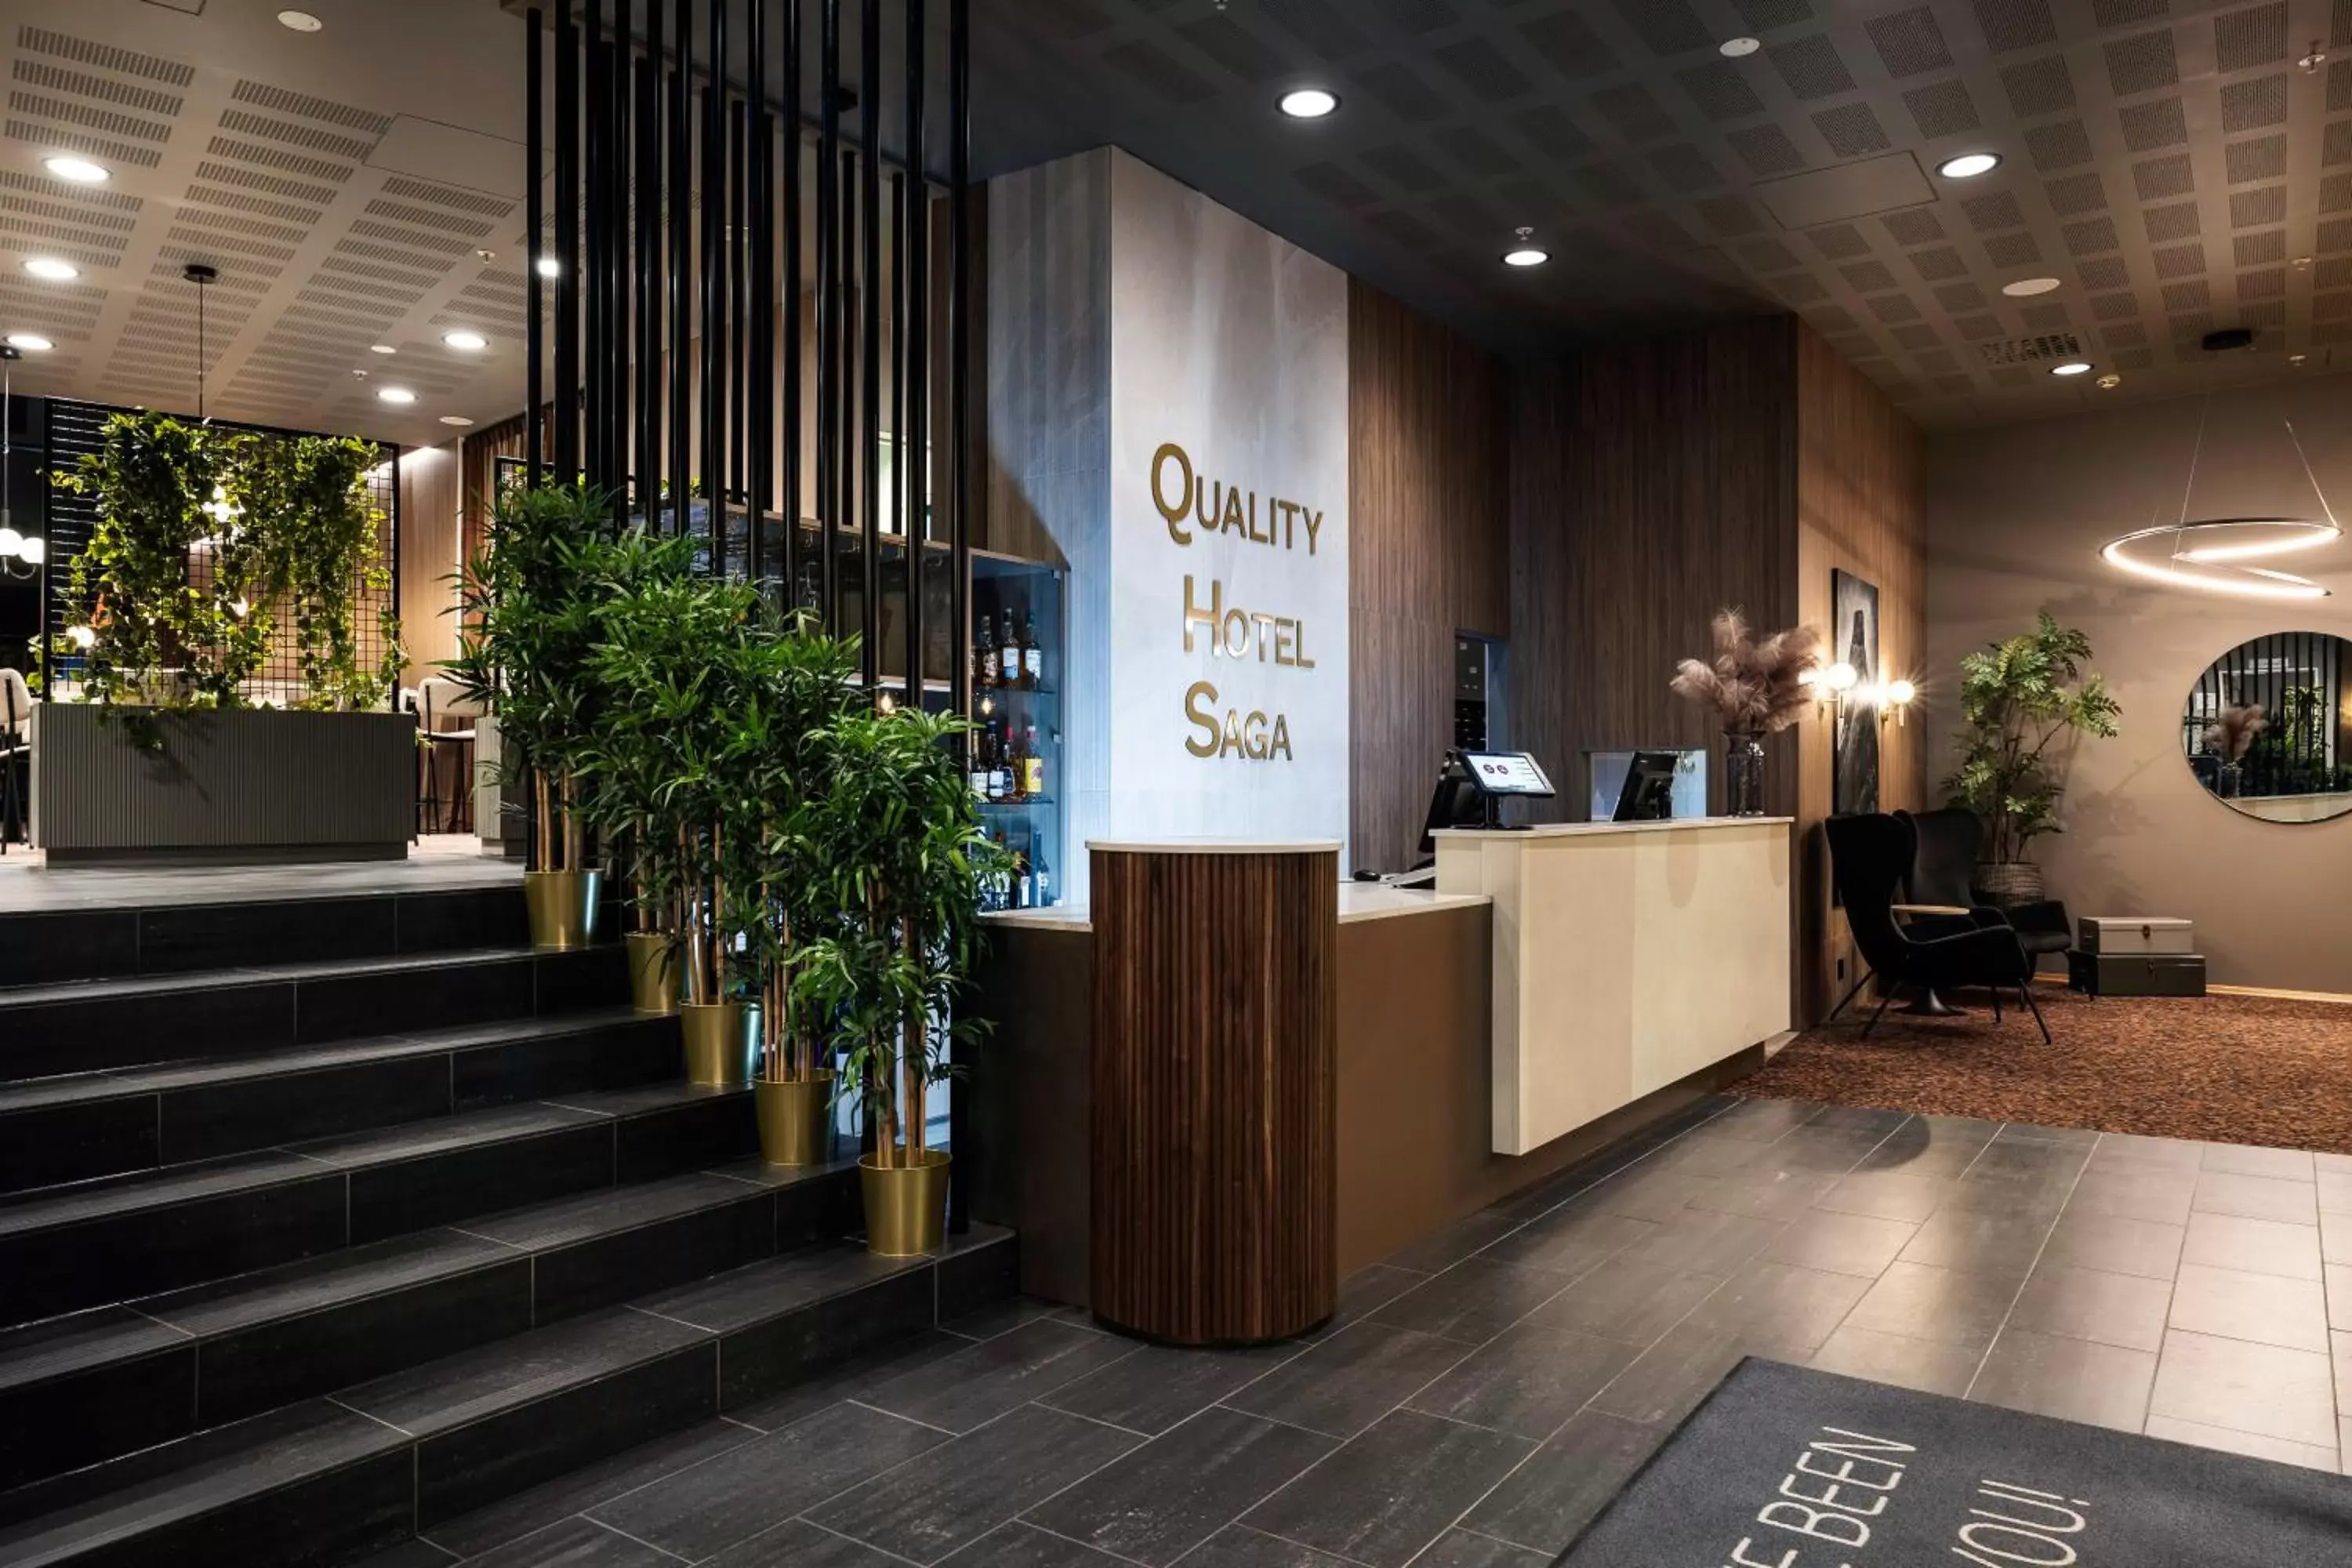 Lobby or reception in Quality Hotel Saga